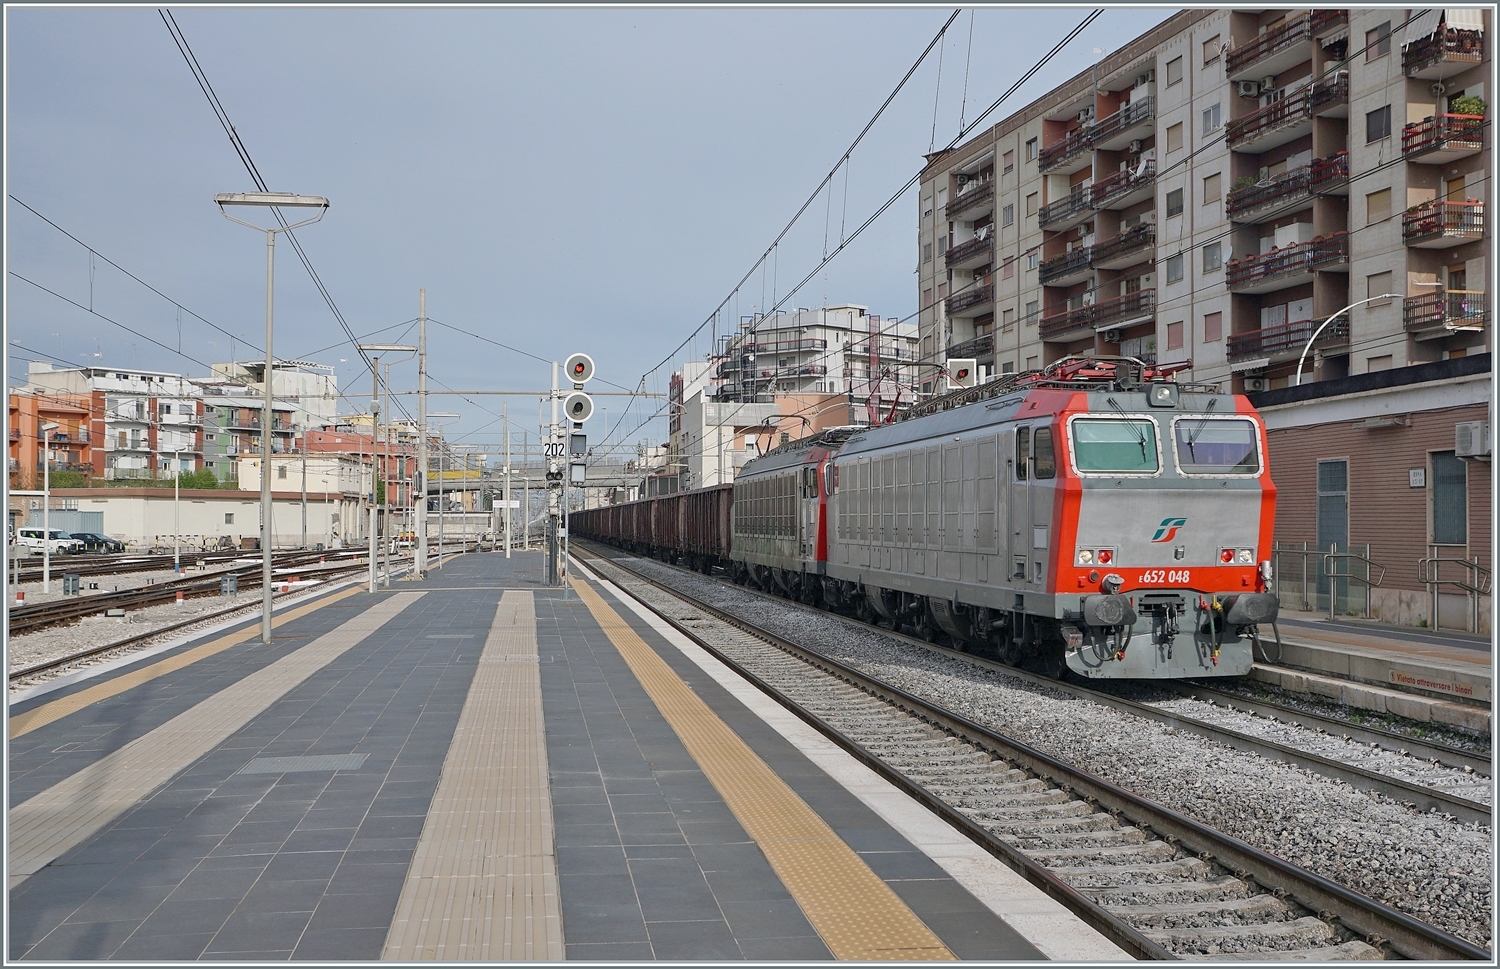 Noch einmal die E 625 048, deren frisch gestrichen Front ich von bereits vorhandenem Graffiti befreit: Die FS Mercitalia E 652 048 und eine weitere fahren mit einem Güterzug aus vierachsigen offenen Güterwagen durch den Bahnhof von Barletta in Richtung Süden. 

25. April 2023